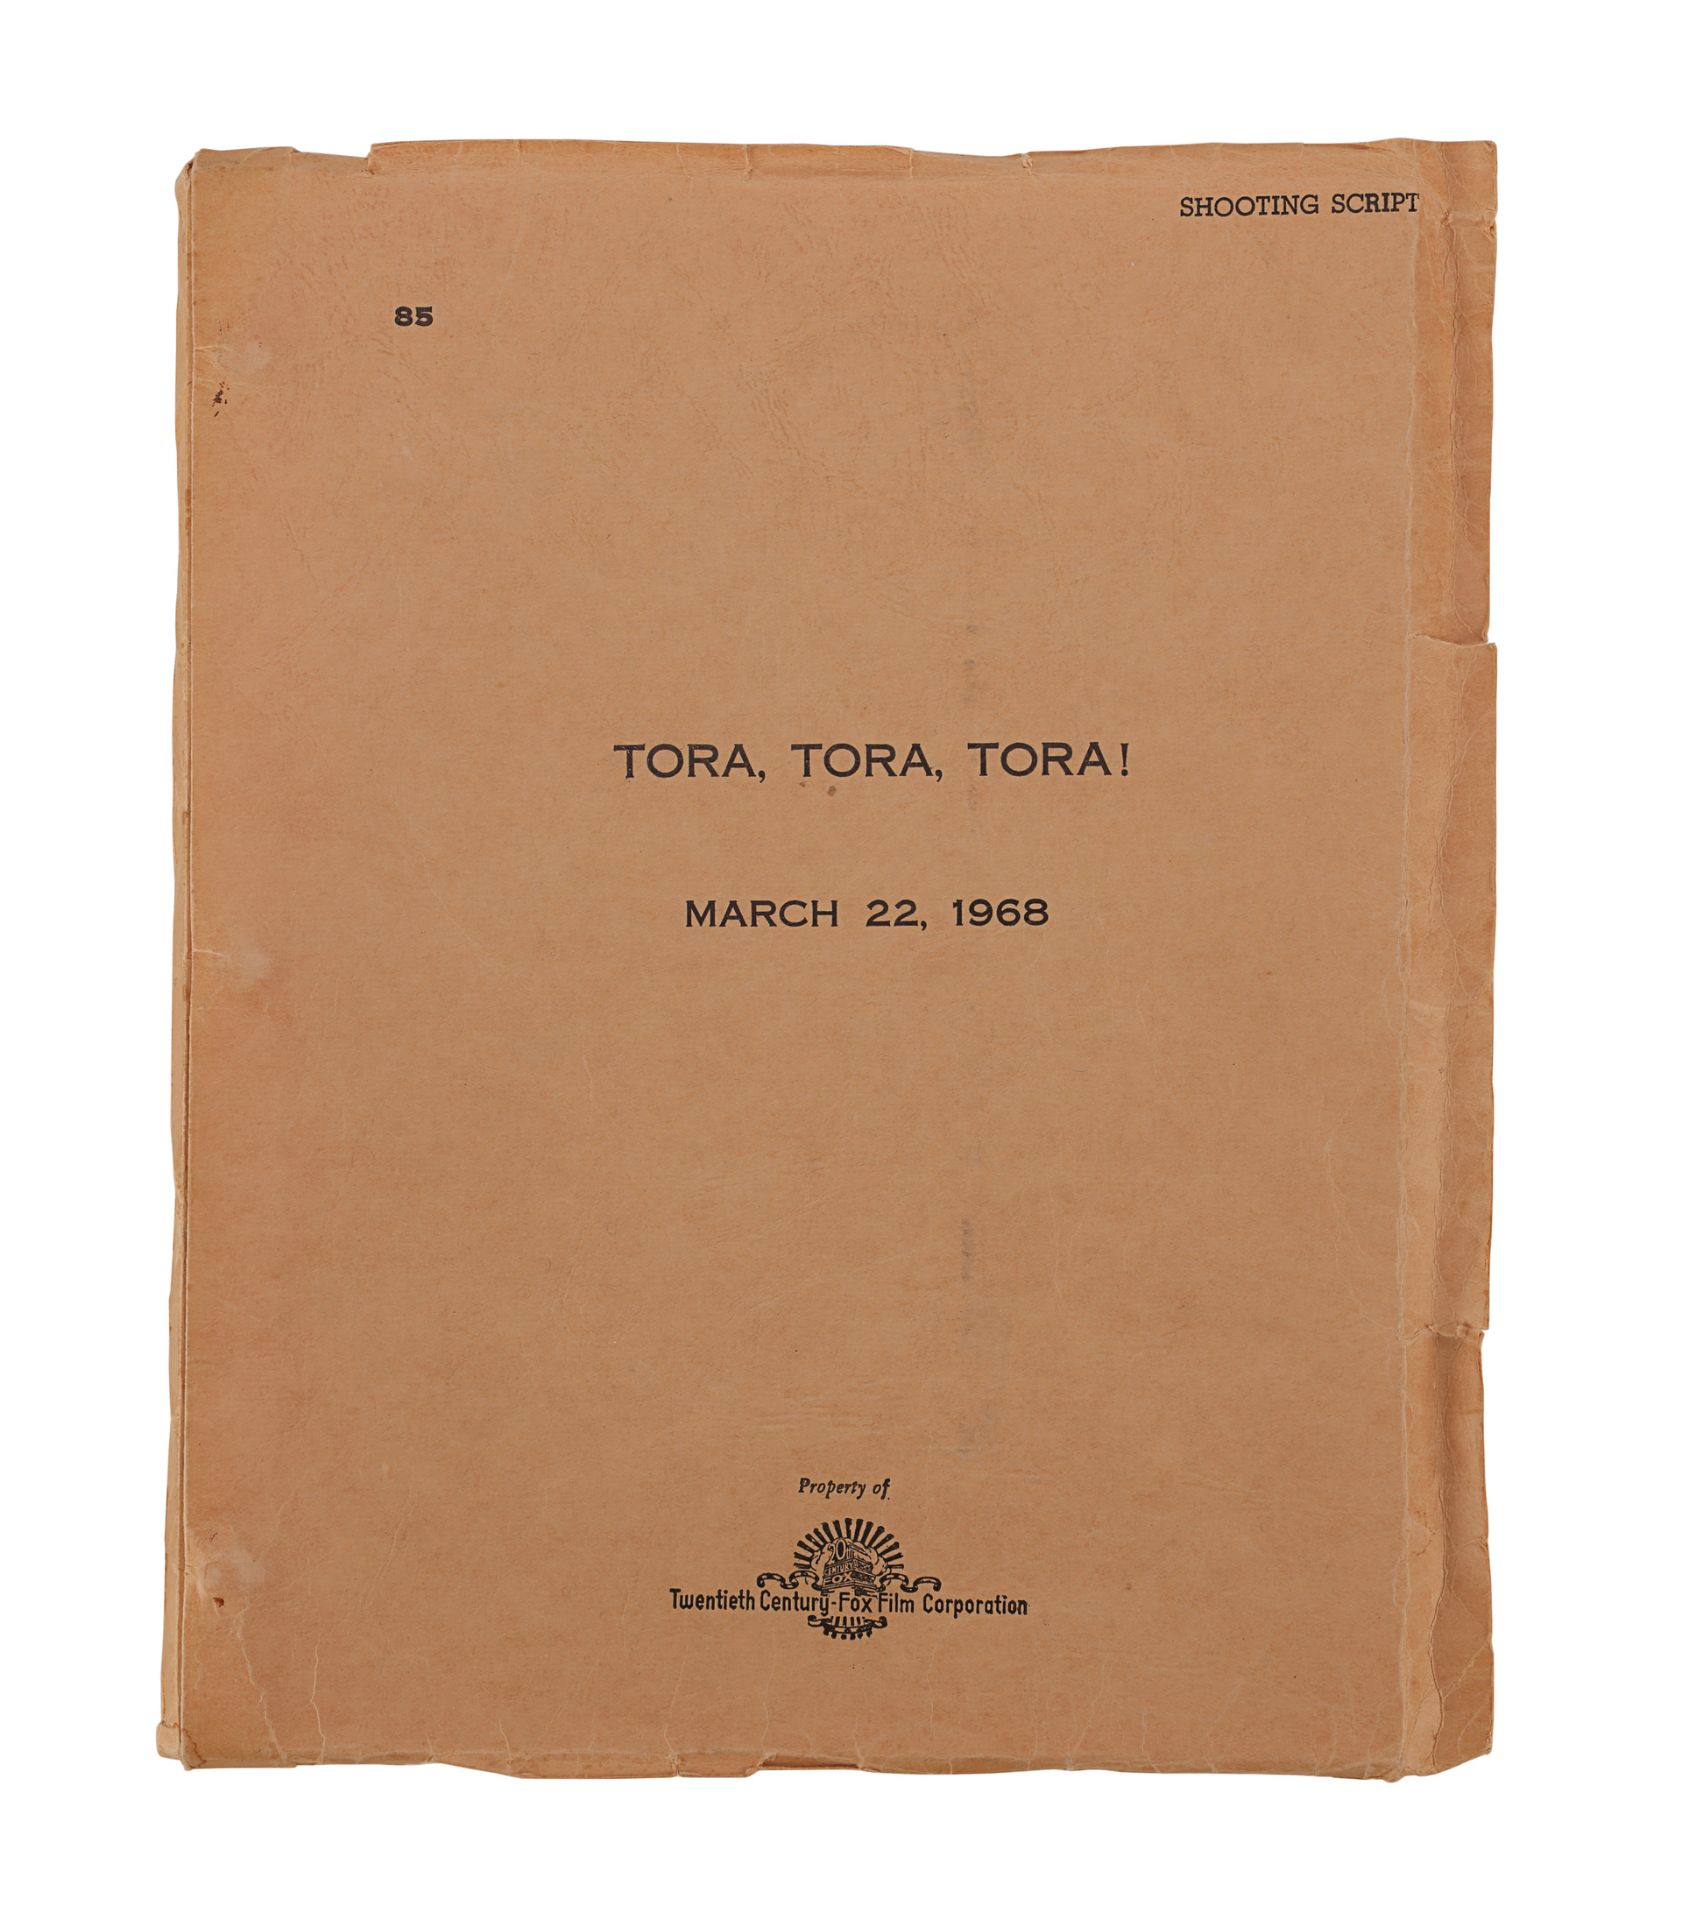 TORA! TORA! TORA! (1970) - Shooting Script